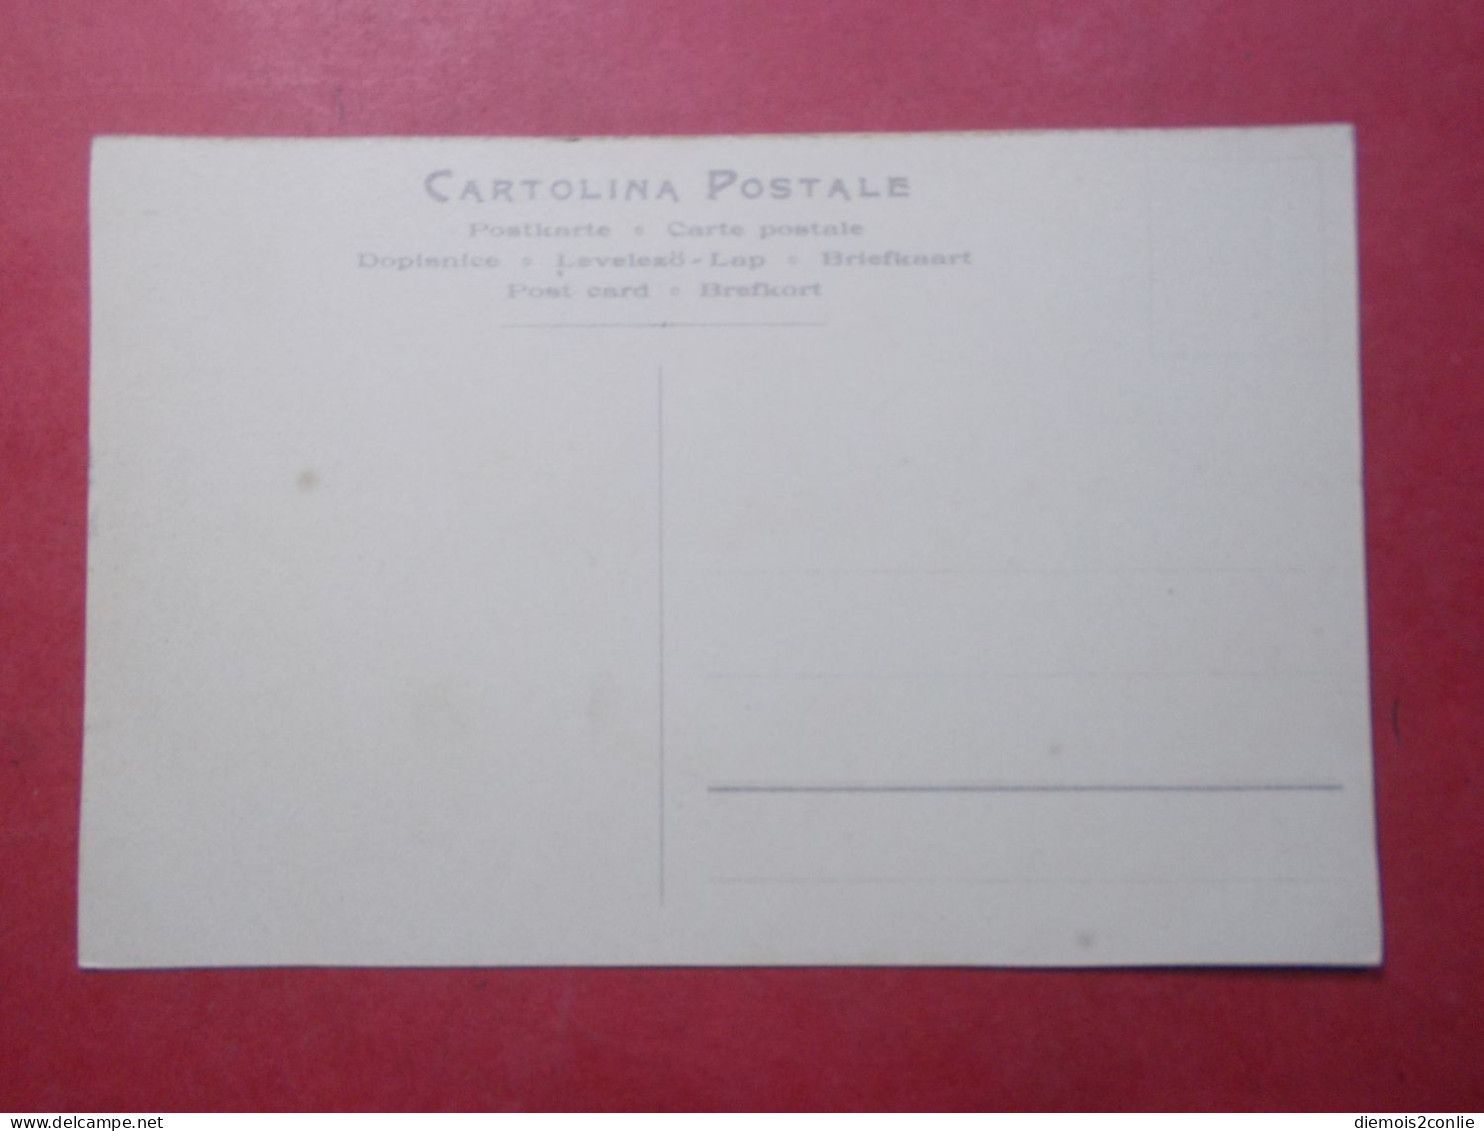 Carte Postale - ITALIE - Interieur De La Gare De Turin (4784) - Transport